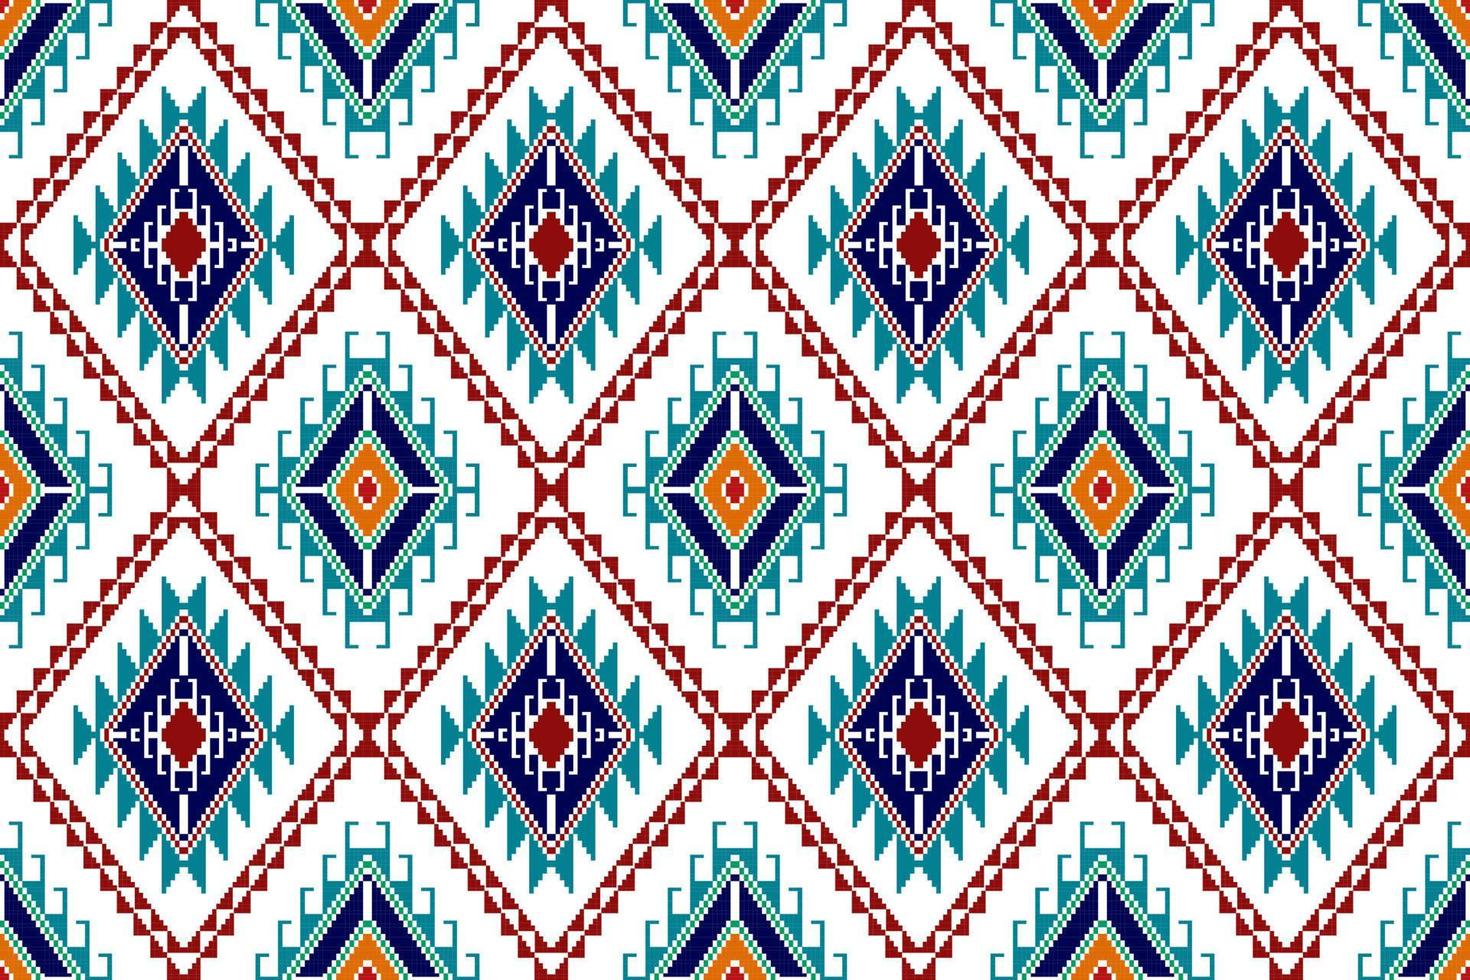 ikat abstrait motif textile ethnique géométrique sans couture. tapis en tissu aztèque ornements de mandala décorations textiles papier peint. vecteur de broderie traditionnelle textile de dinde indigène boho tribal.